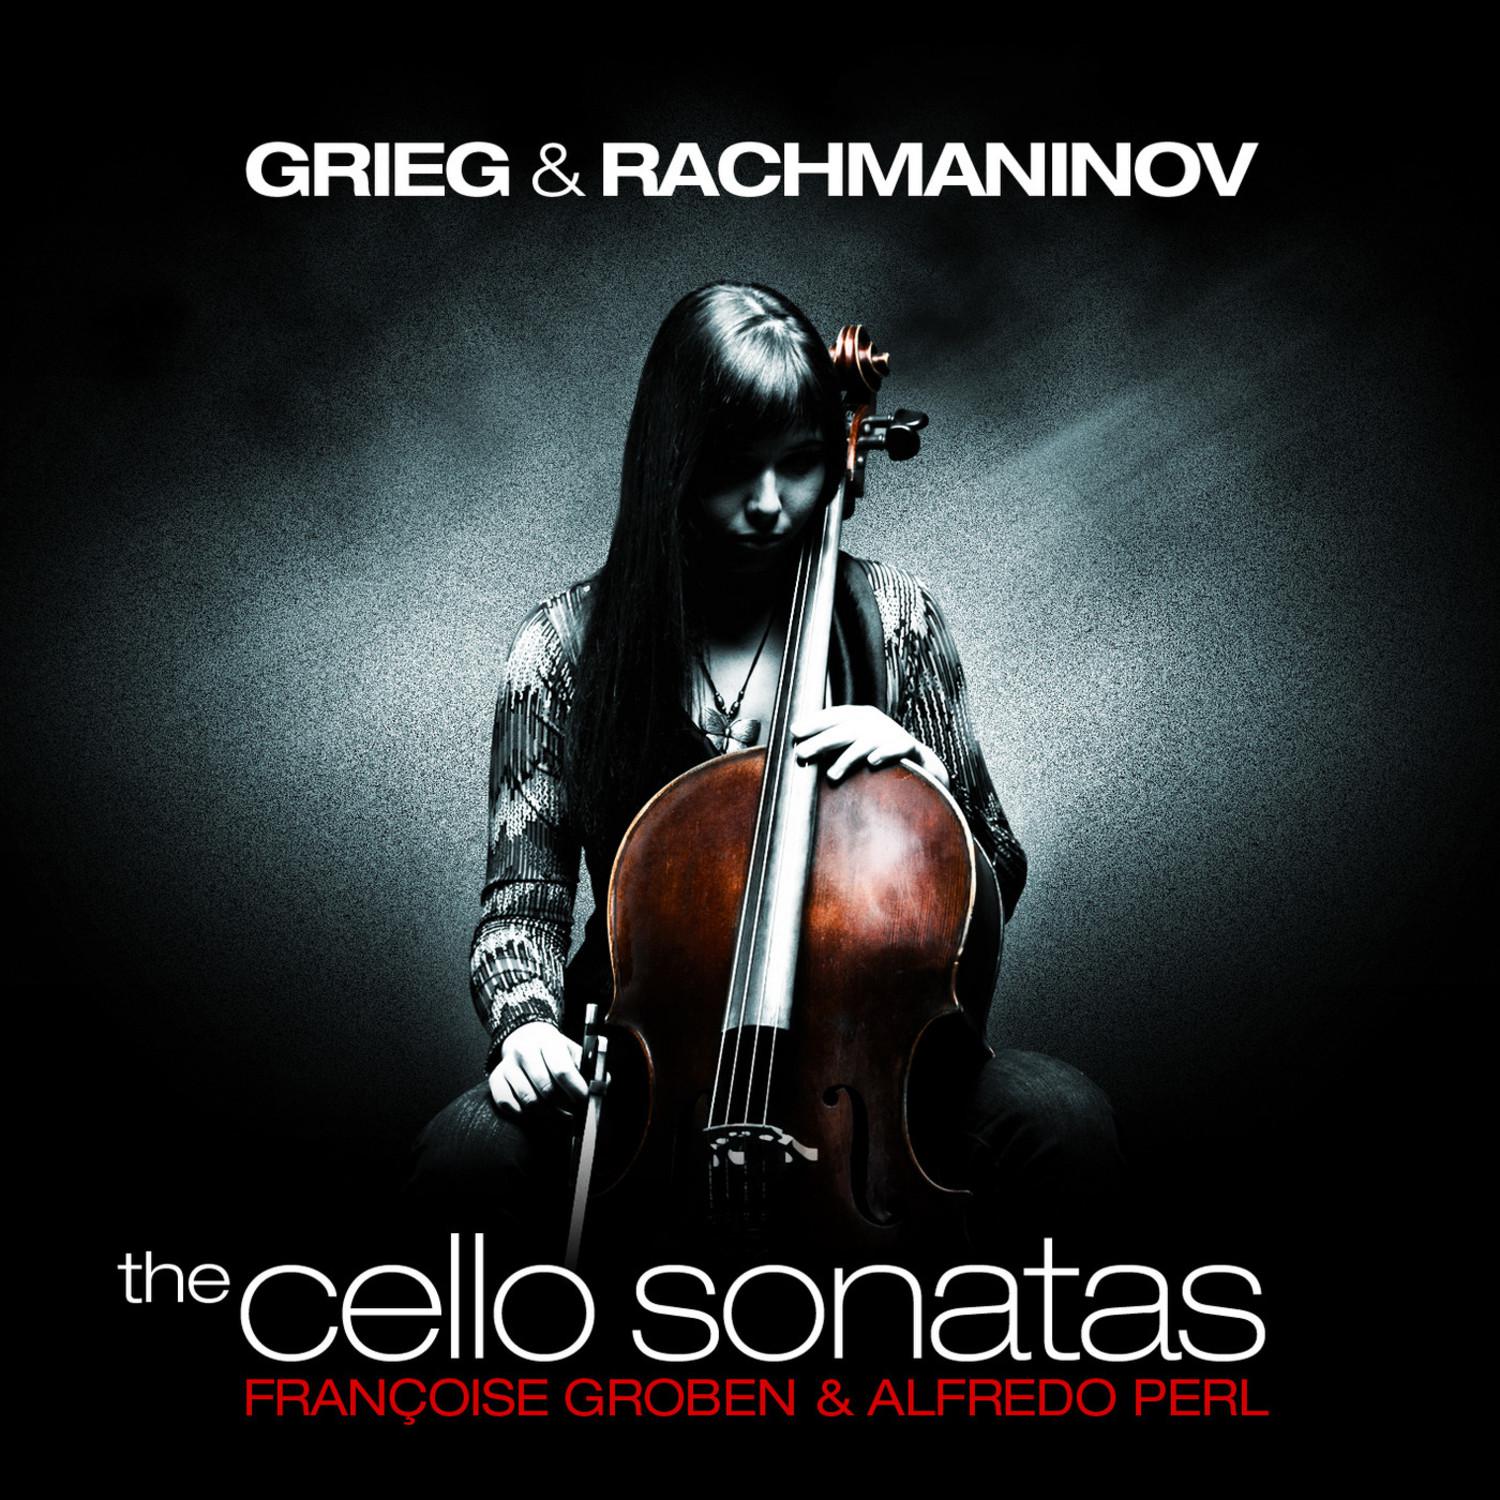 Sonata in G Minor for Cello and Piano, Op. 19: I. Lento - Allegro moderato